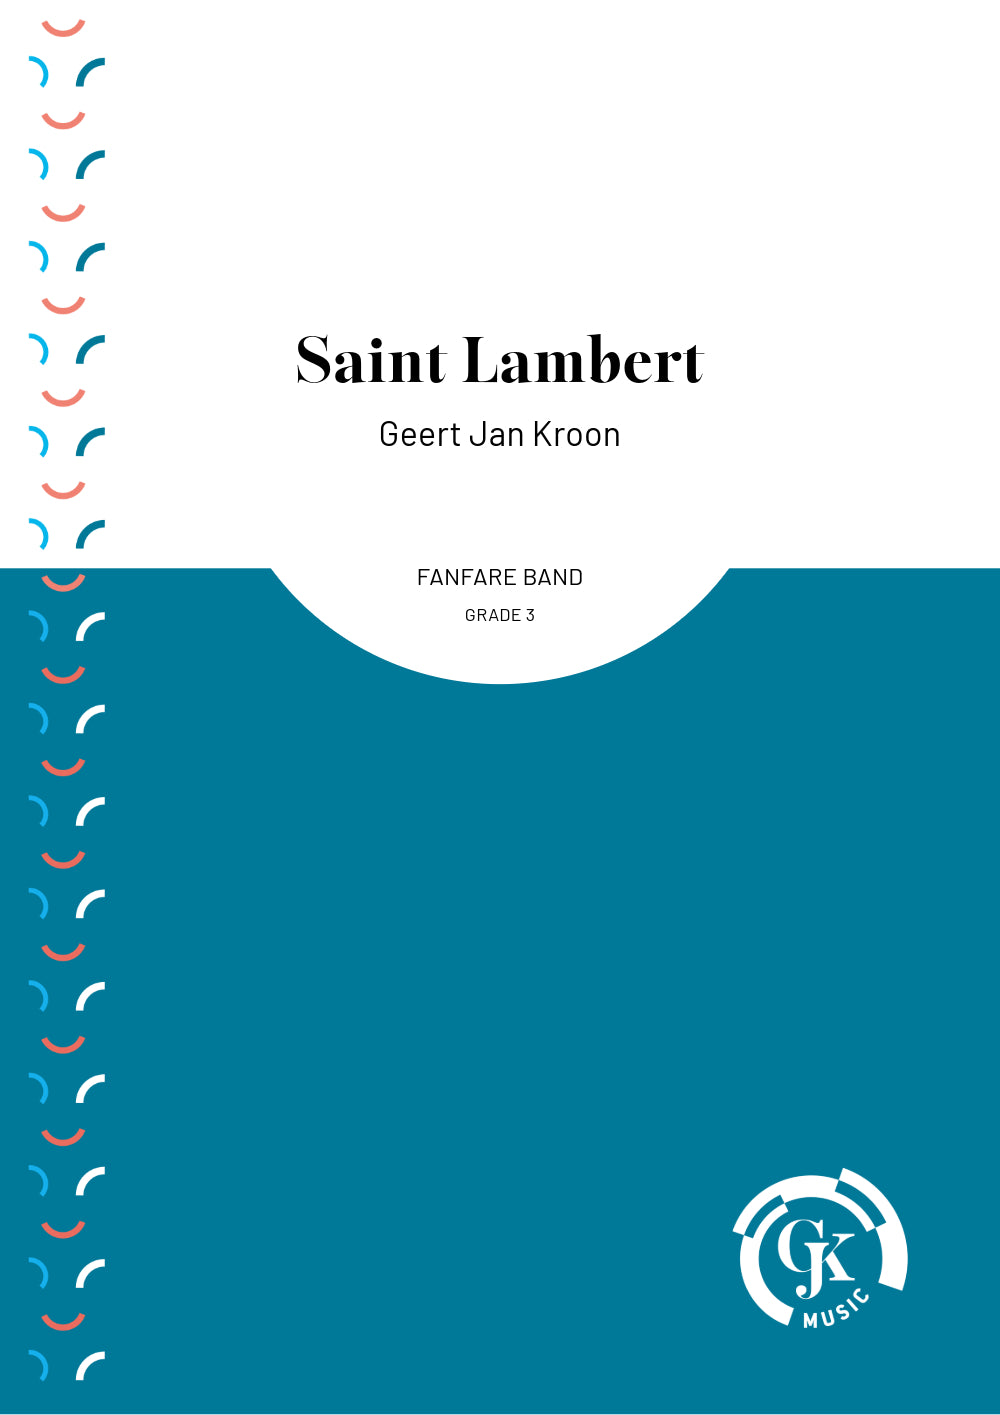 Saint Lambert - Fanfare